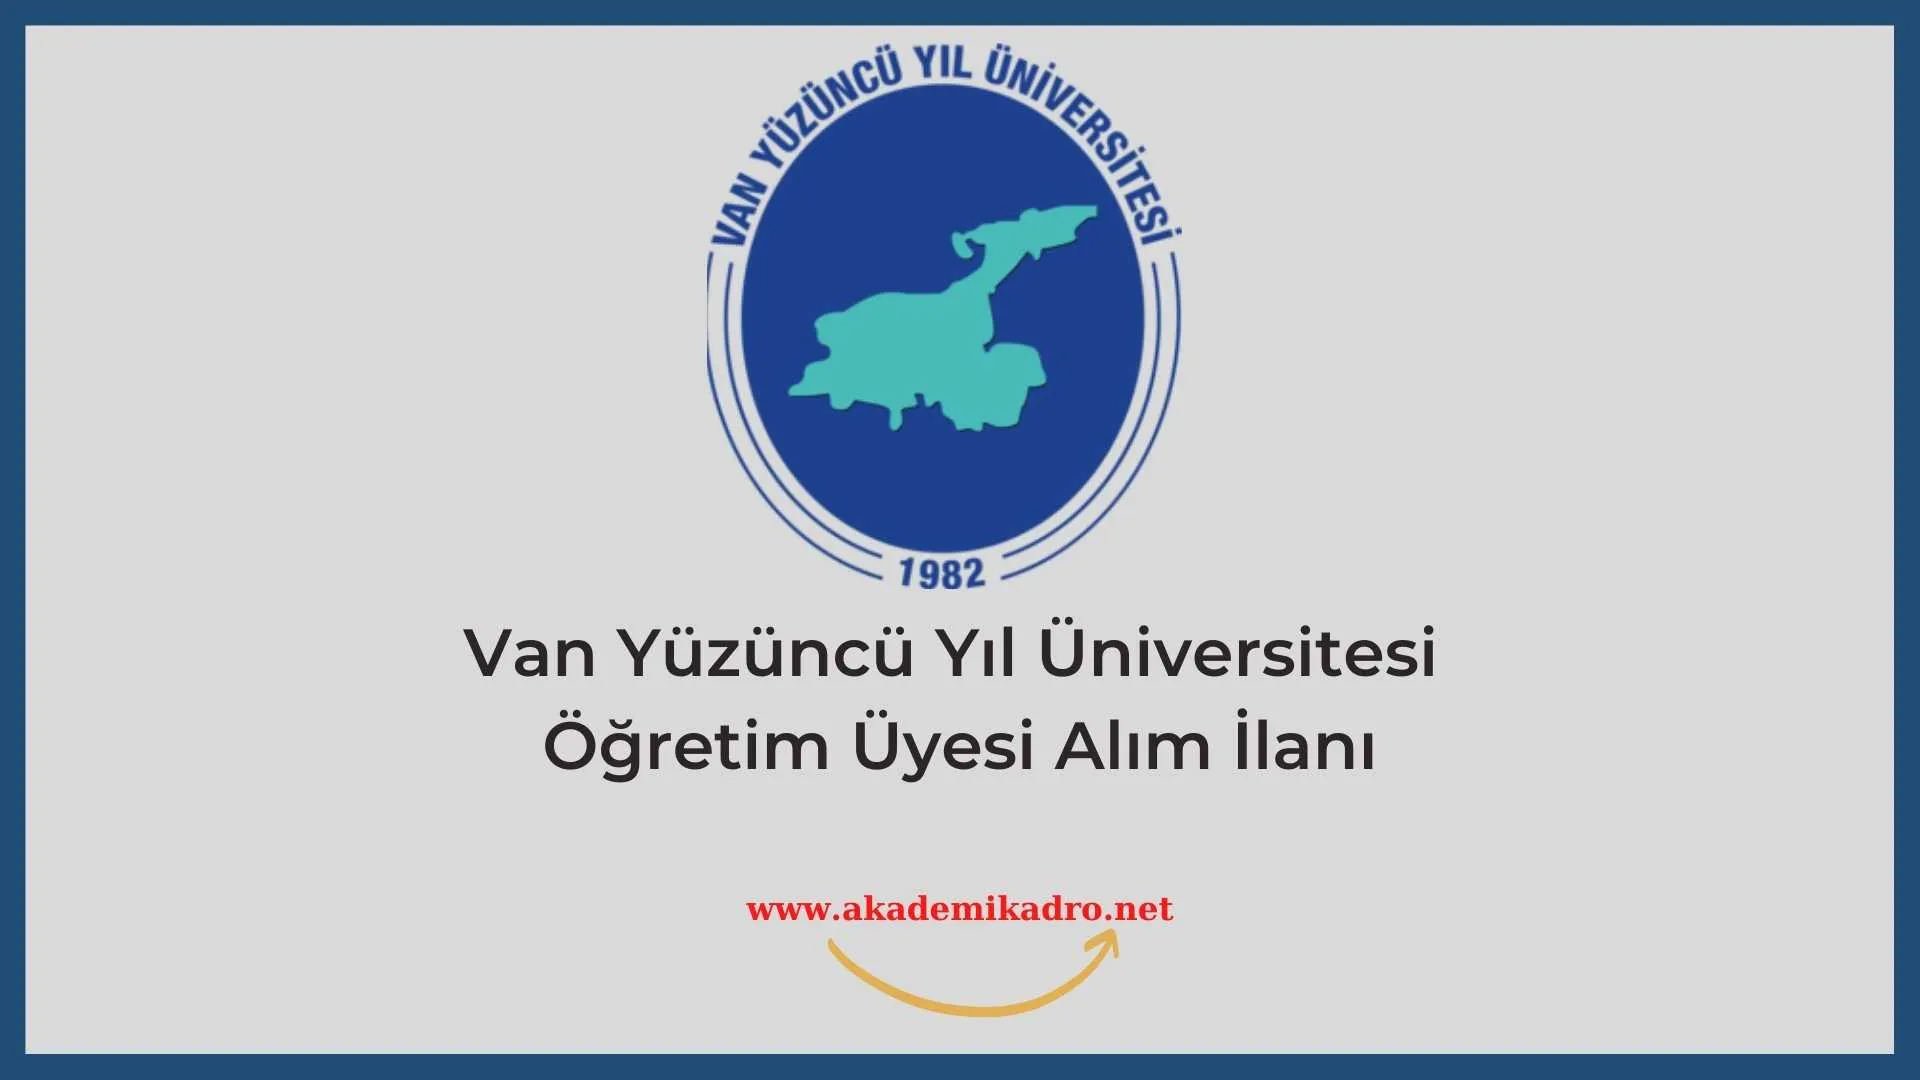 Van Yüzüncü Yıl Üniversitesi birçok alandan 22 öğretim üyesi alacak. Son başvuru tarihi 1 Eylül 2022.